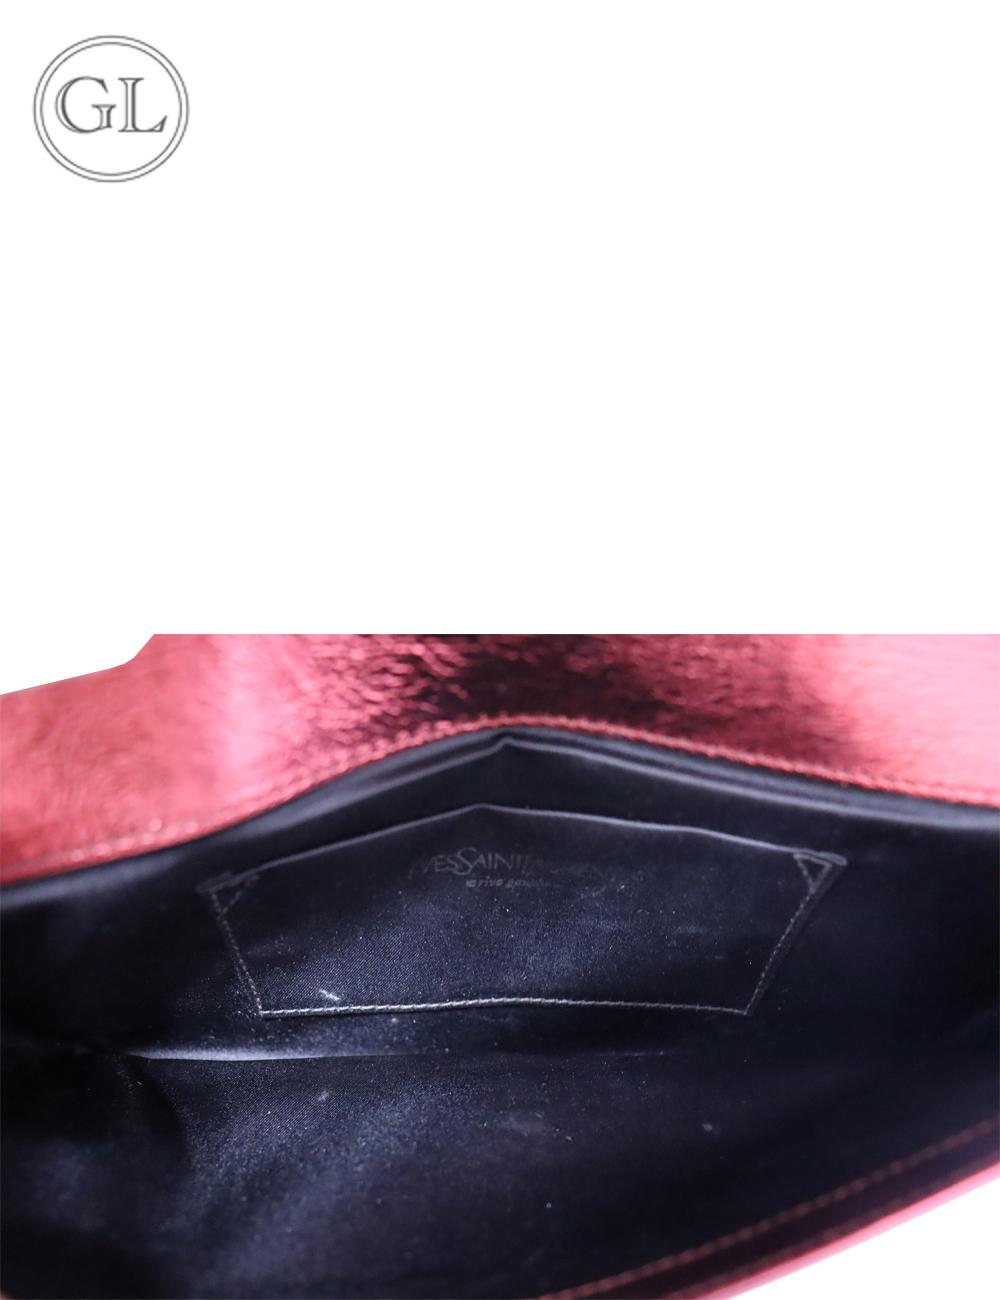 Yves Saint Laurent Metallic Red Leather Belle De Jour Flap Clutch 1